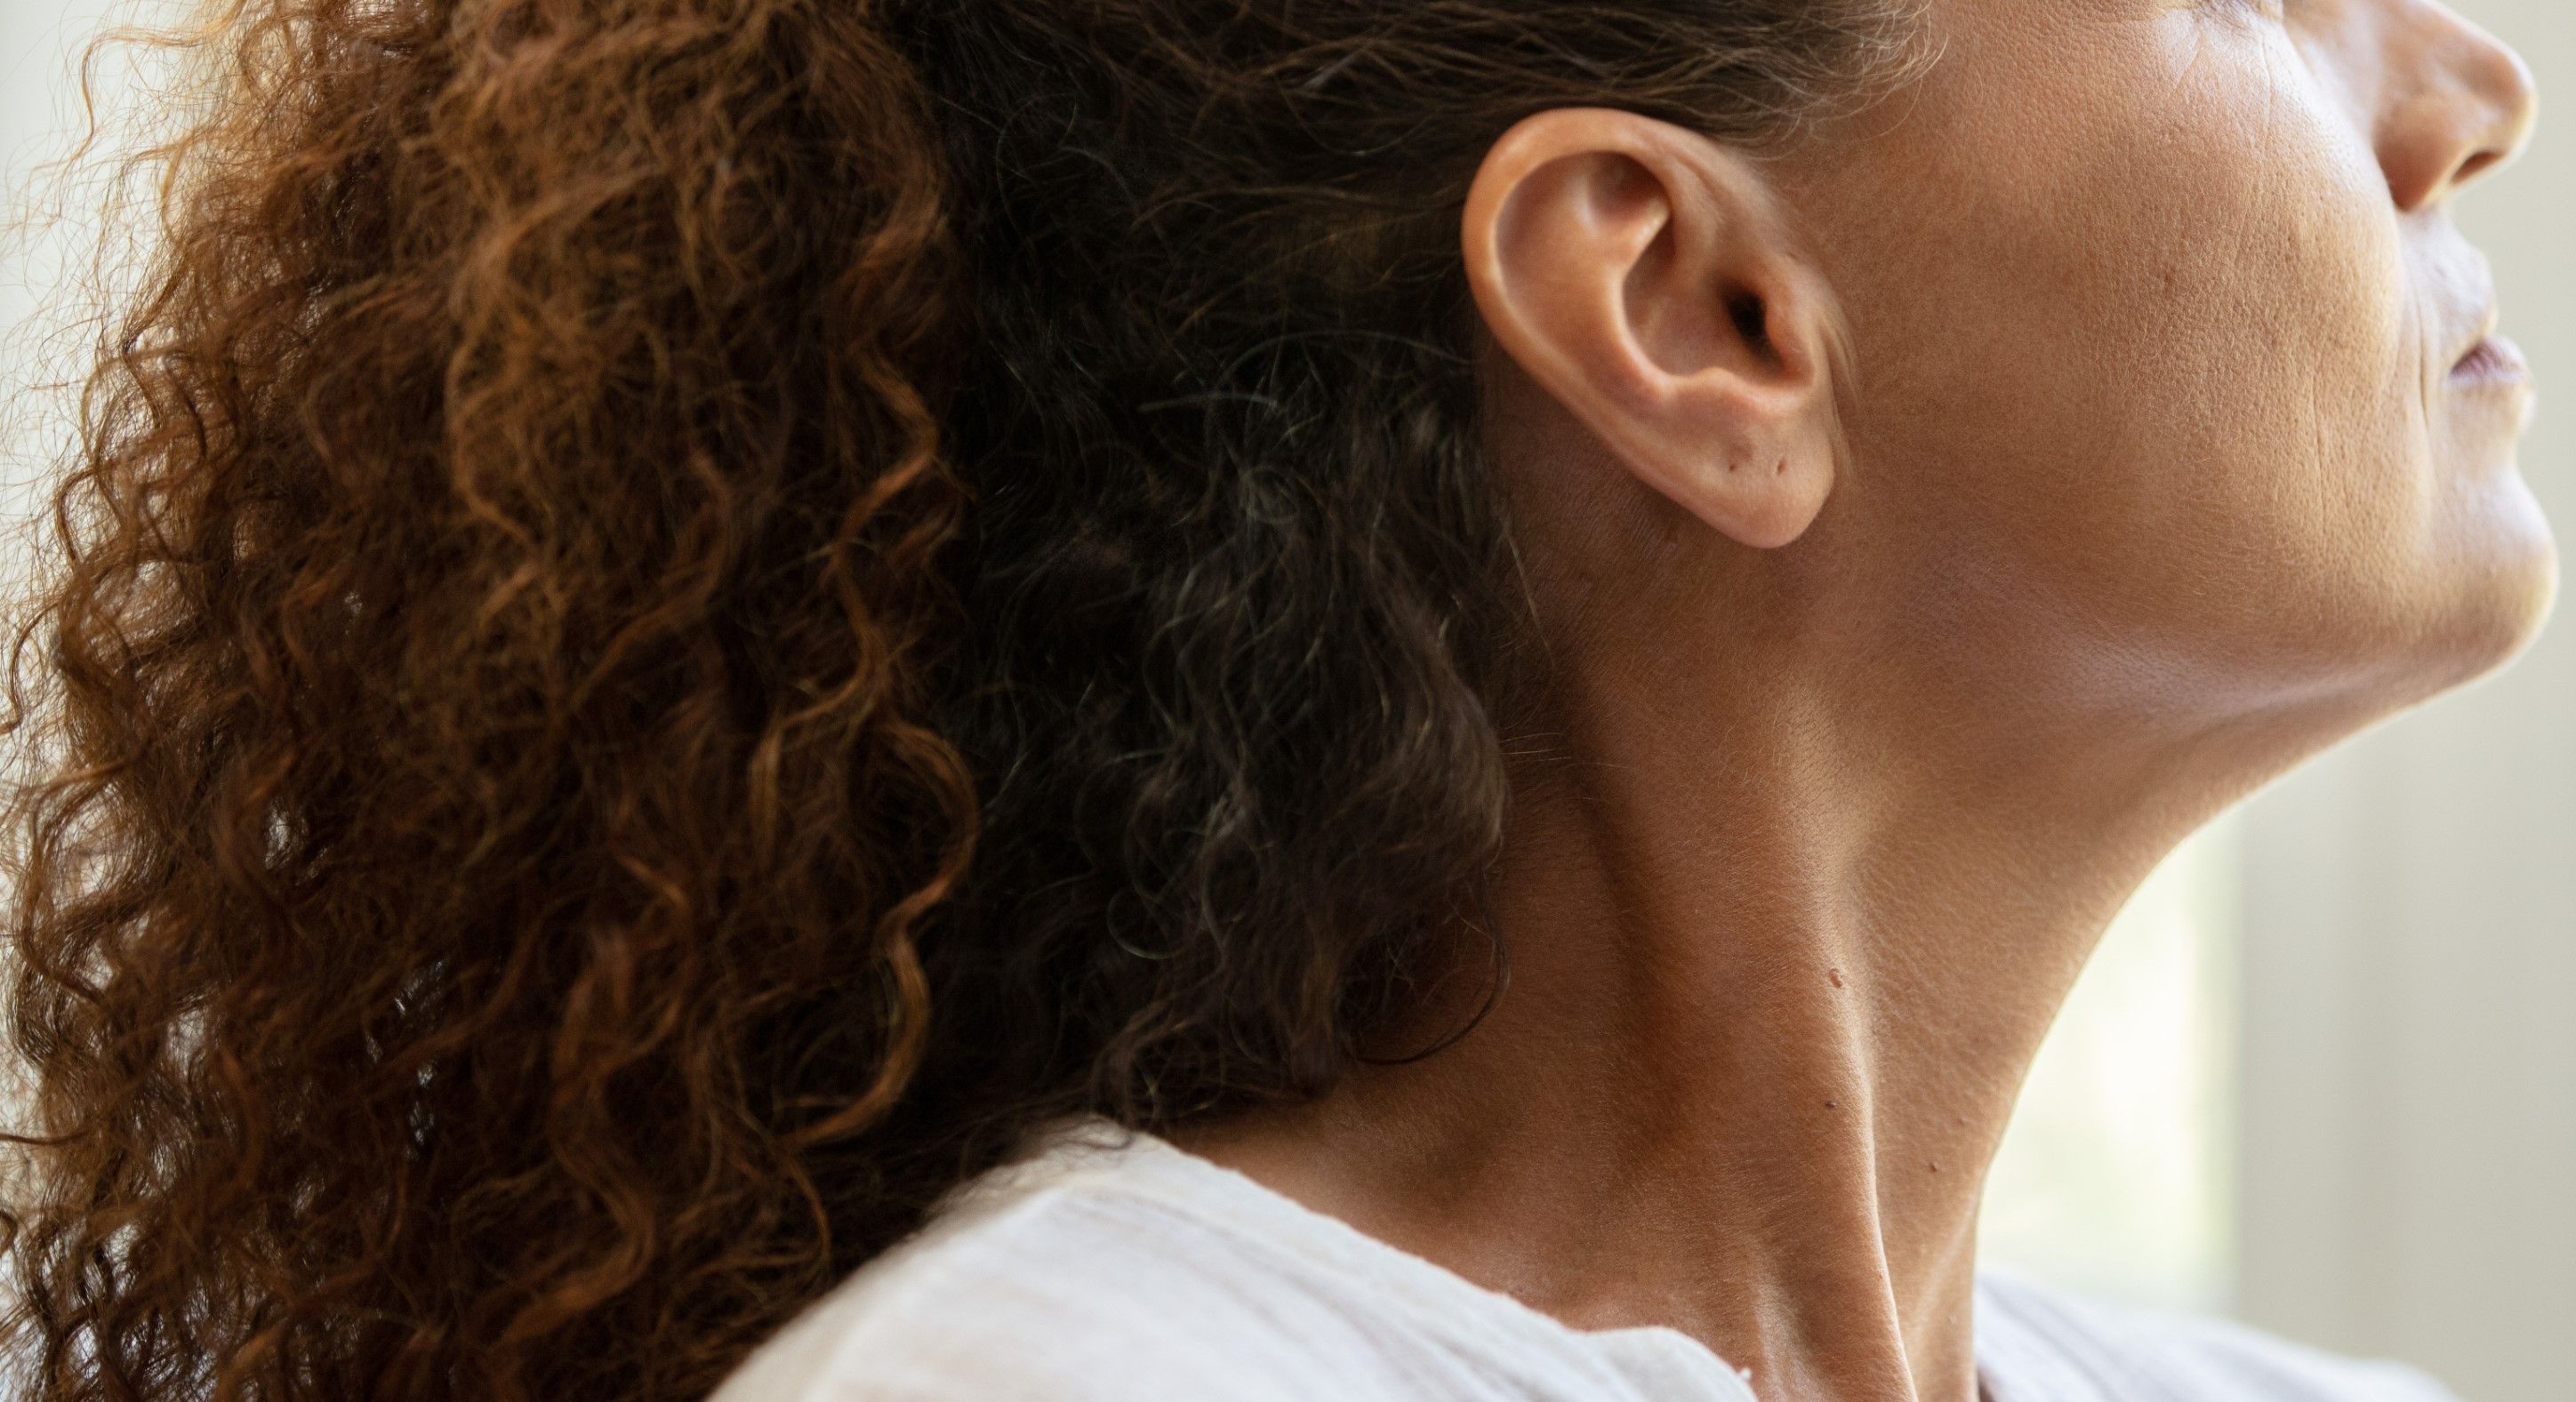 Side portrait close up of a woman's neck